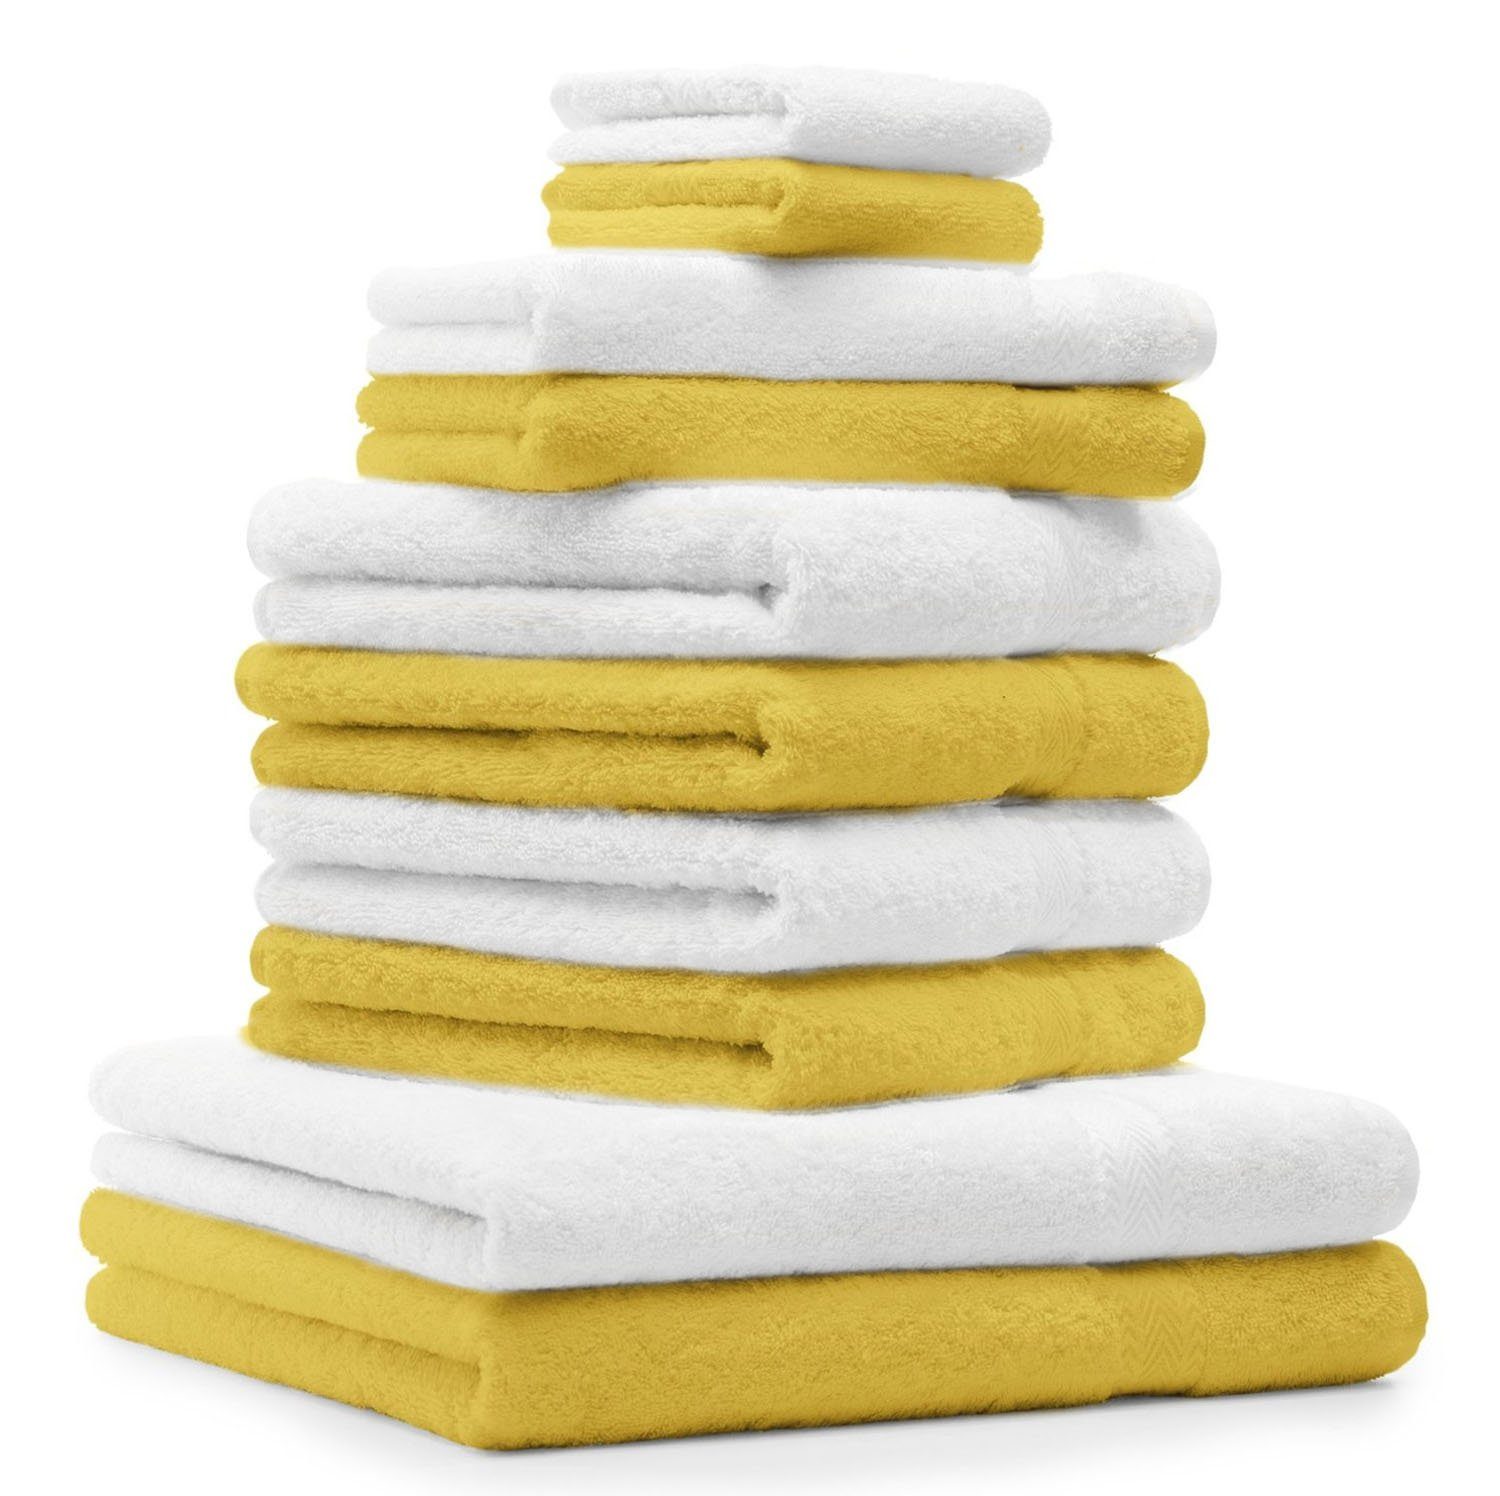 Betz Handtuch Set 10-TLG. Handtuch-Set Classic Farbe gelb und weiß, 100% Baumwolle